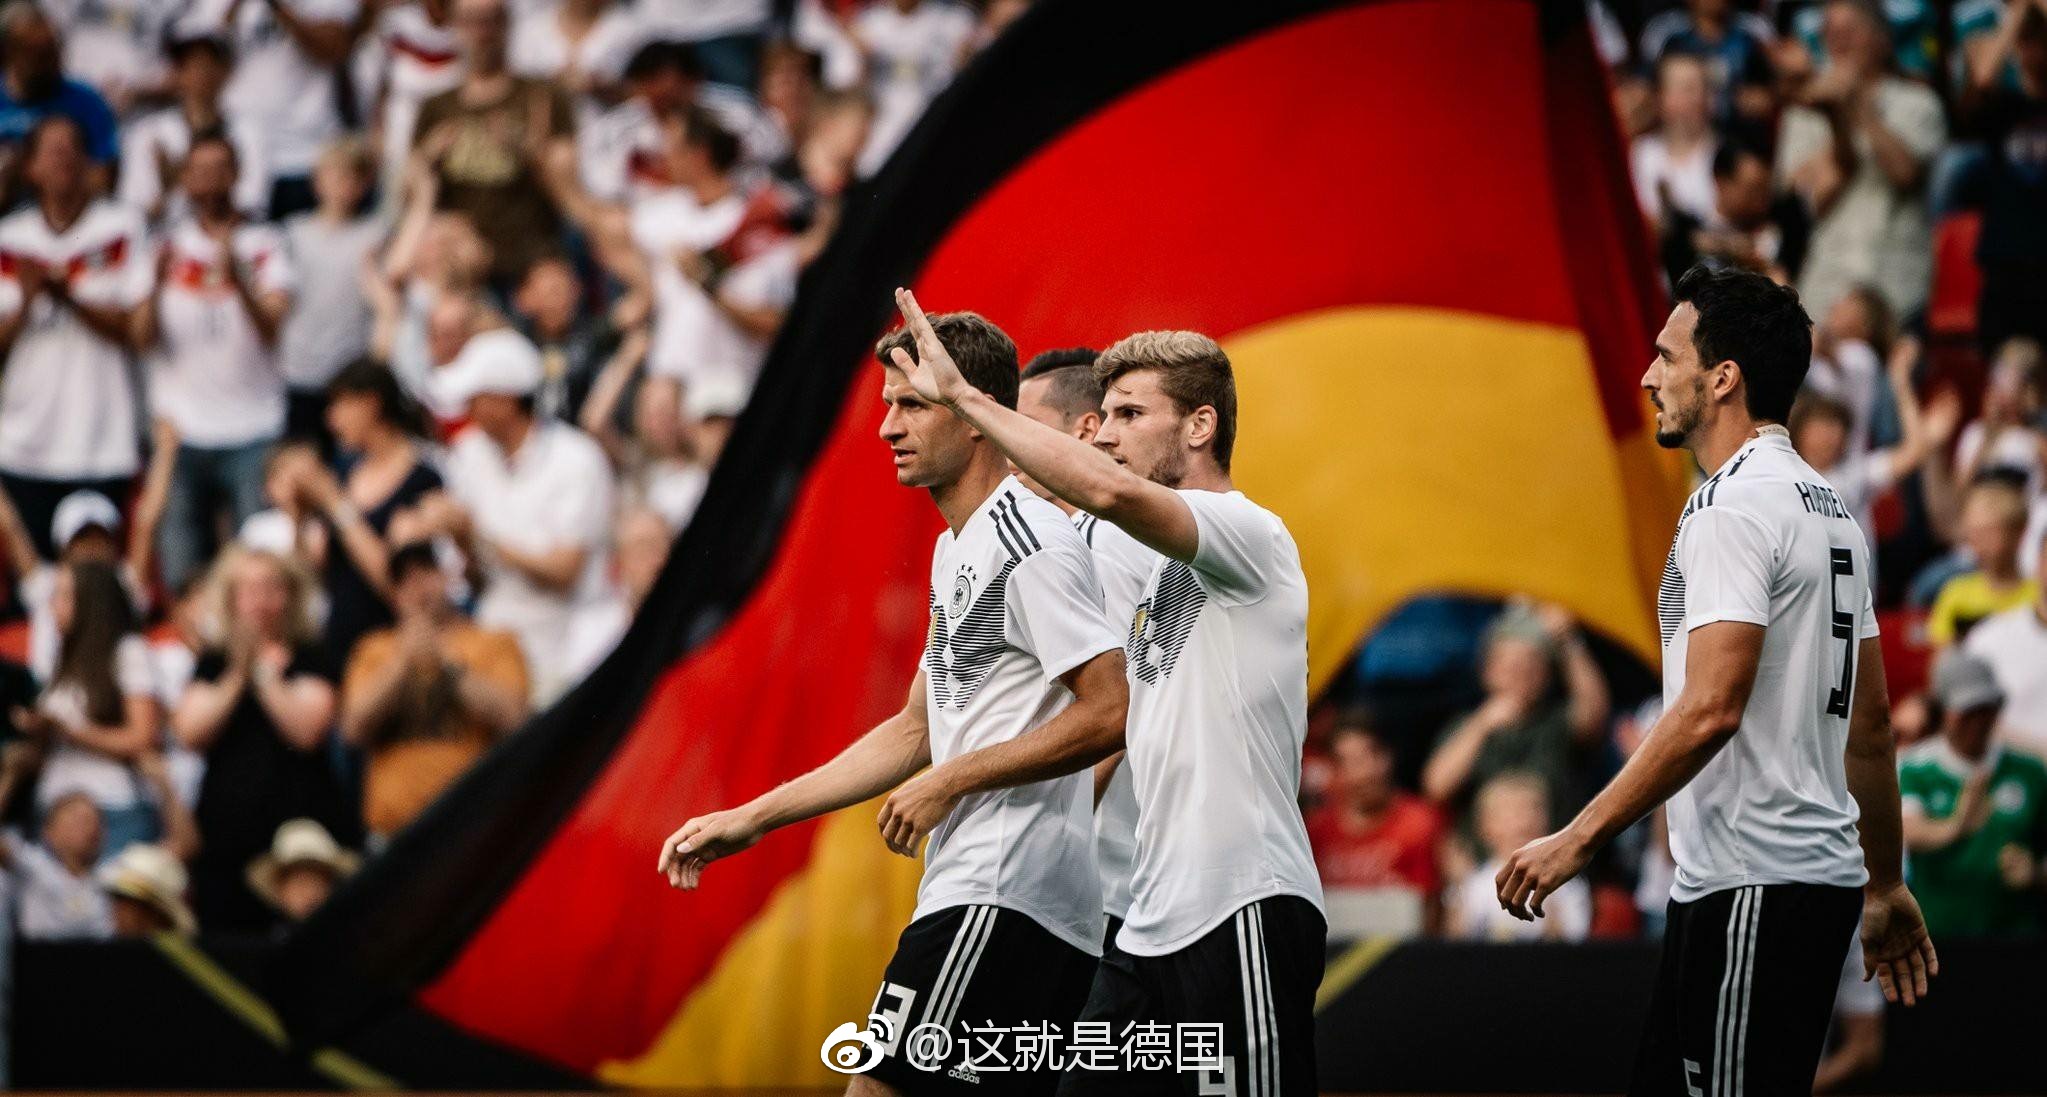 我记得上一届世界杯德国足球队就已经改名或